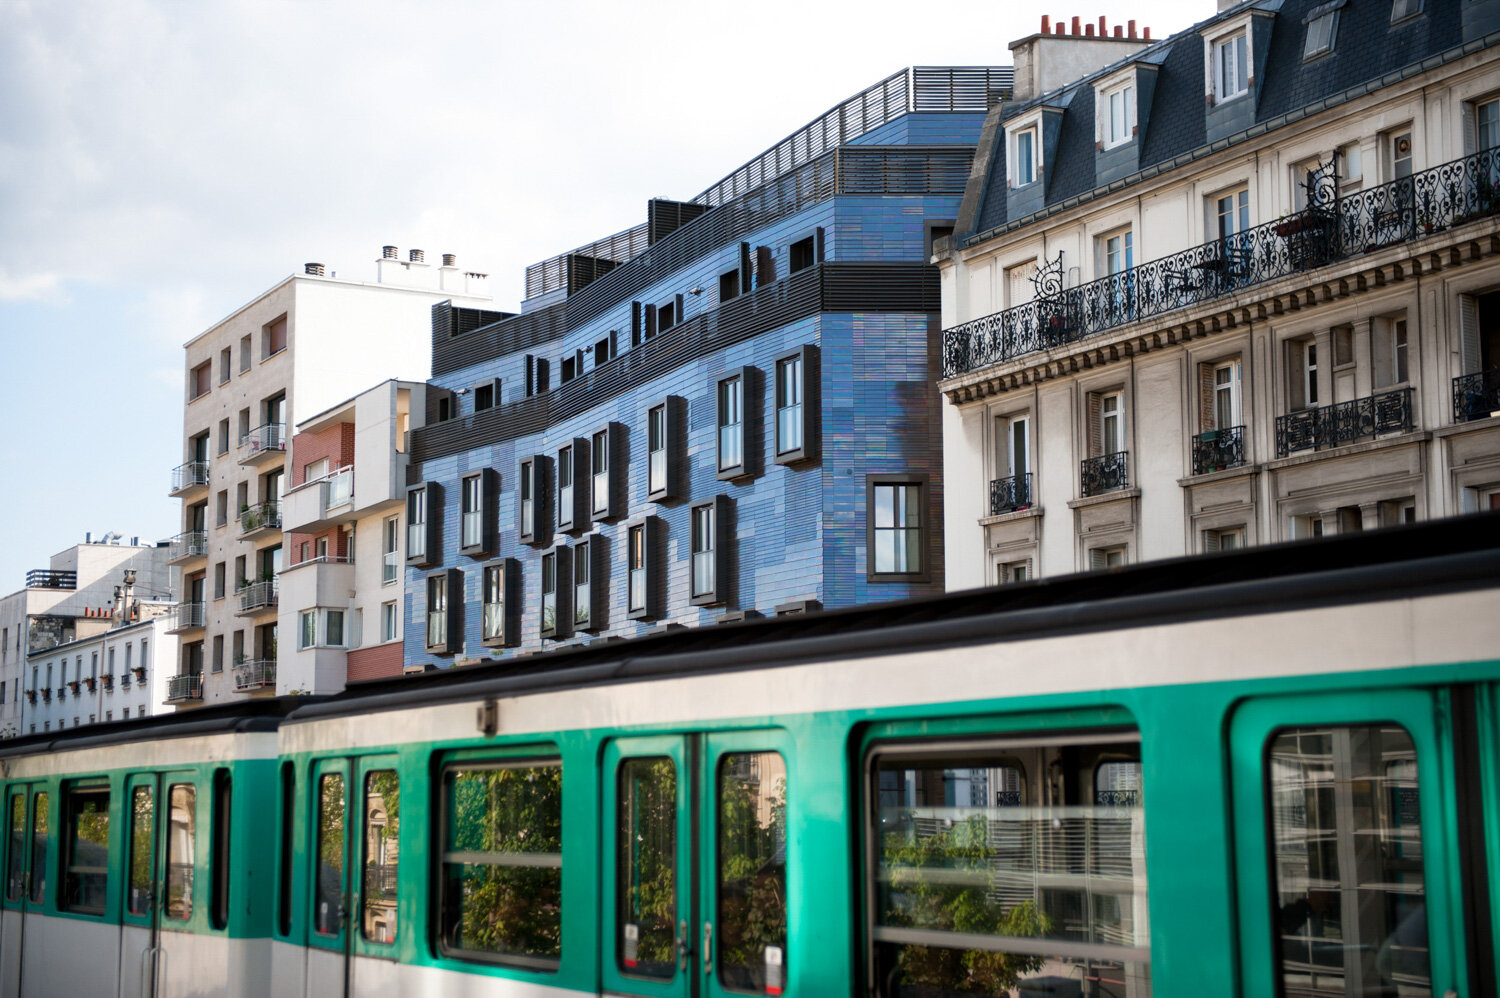  Métro parisien et façade d'immeuble. Avec Nexity. Paris, France. Octobre 2013 // Paris metro and building facade. With Nexity. Paris, France. October 2013. 